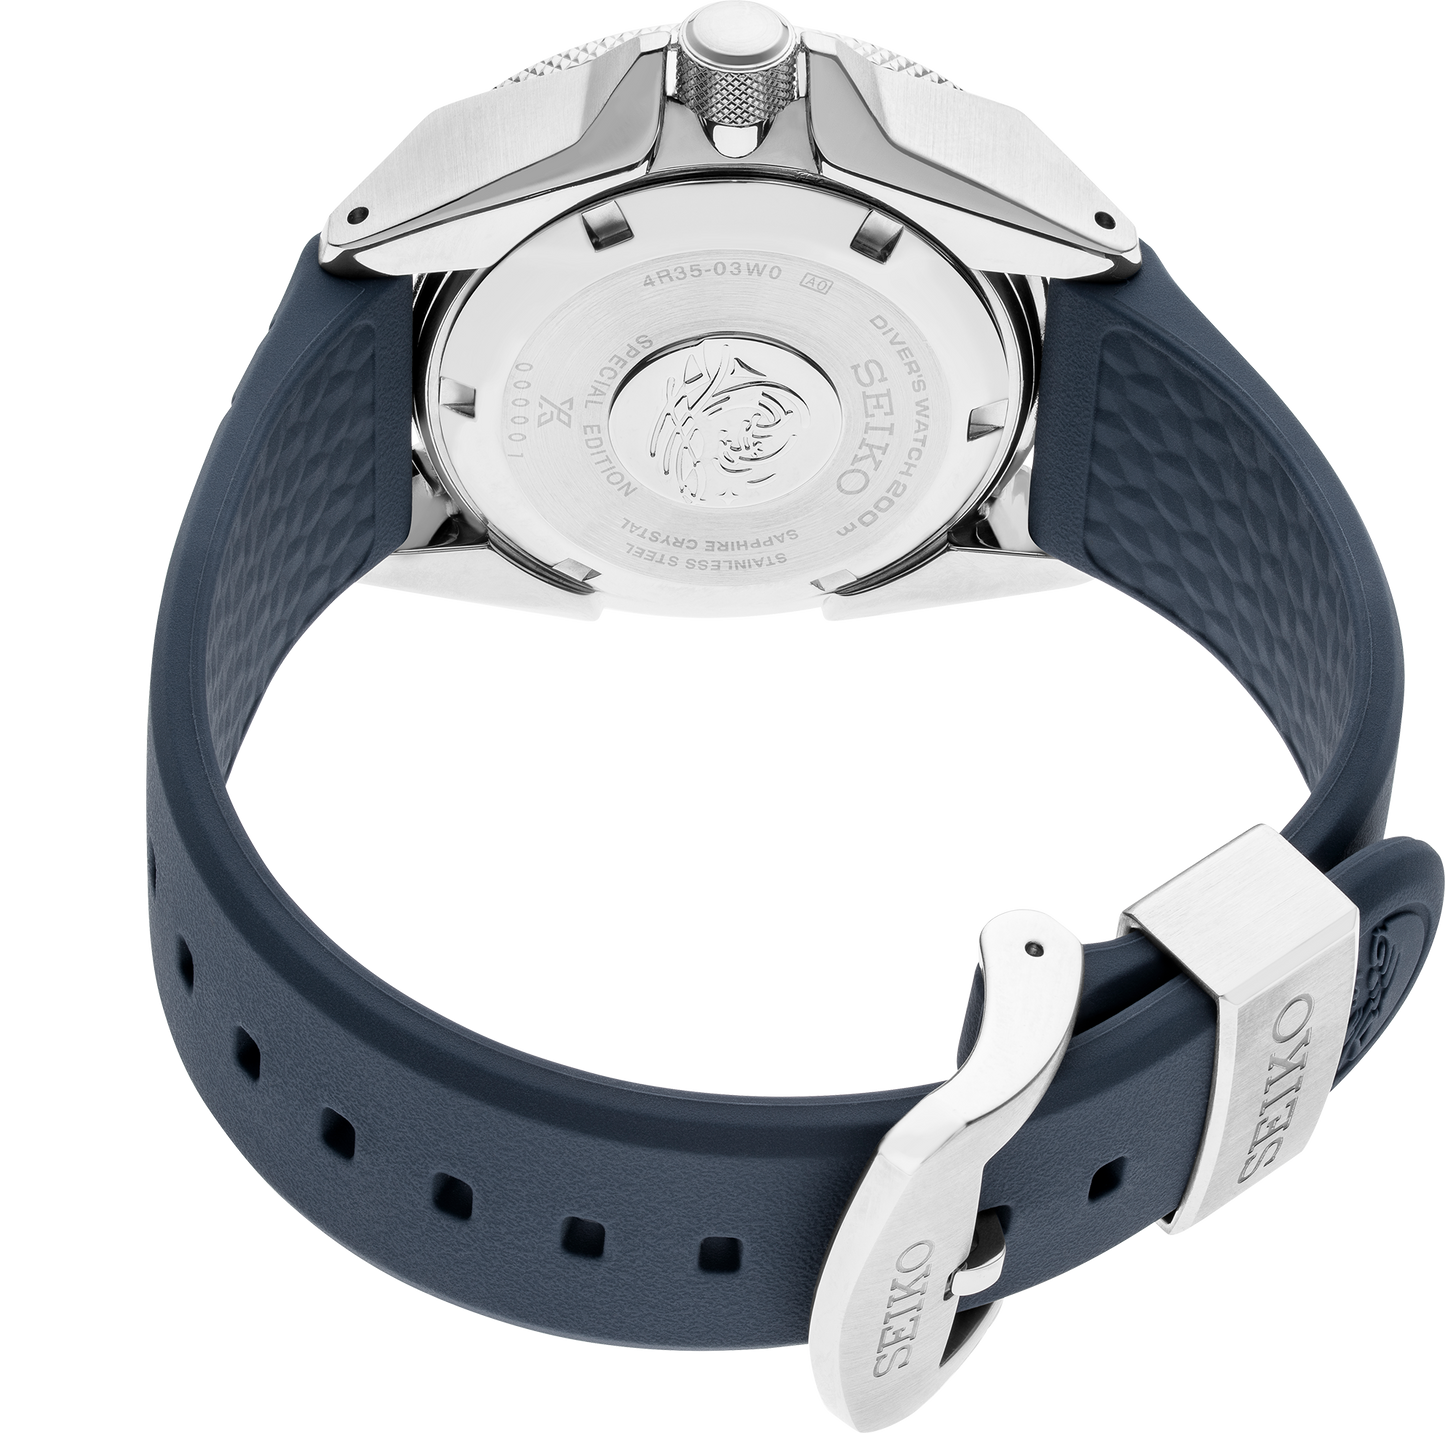 Seiko Men's Automatic Prospex Diver Dark Blue Silicone Strap Watch 44mm SRPF79